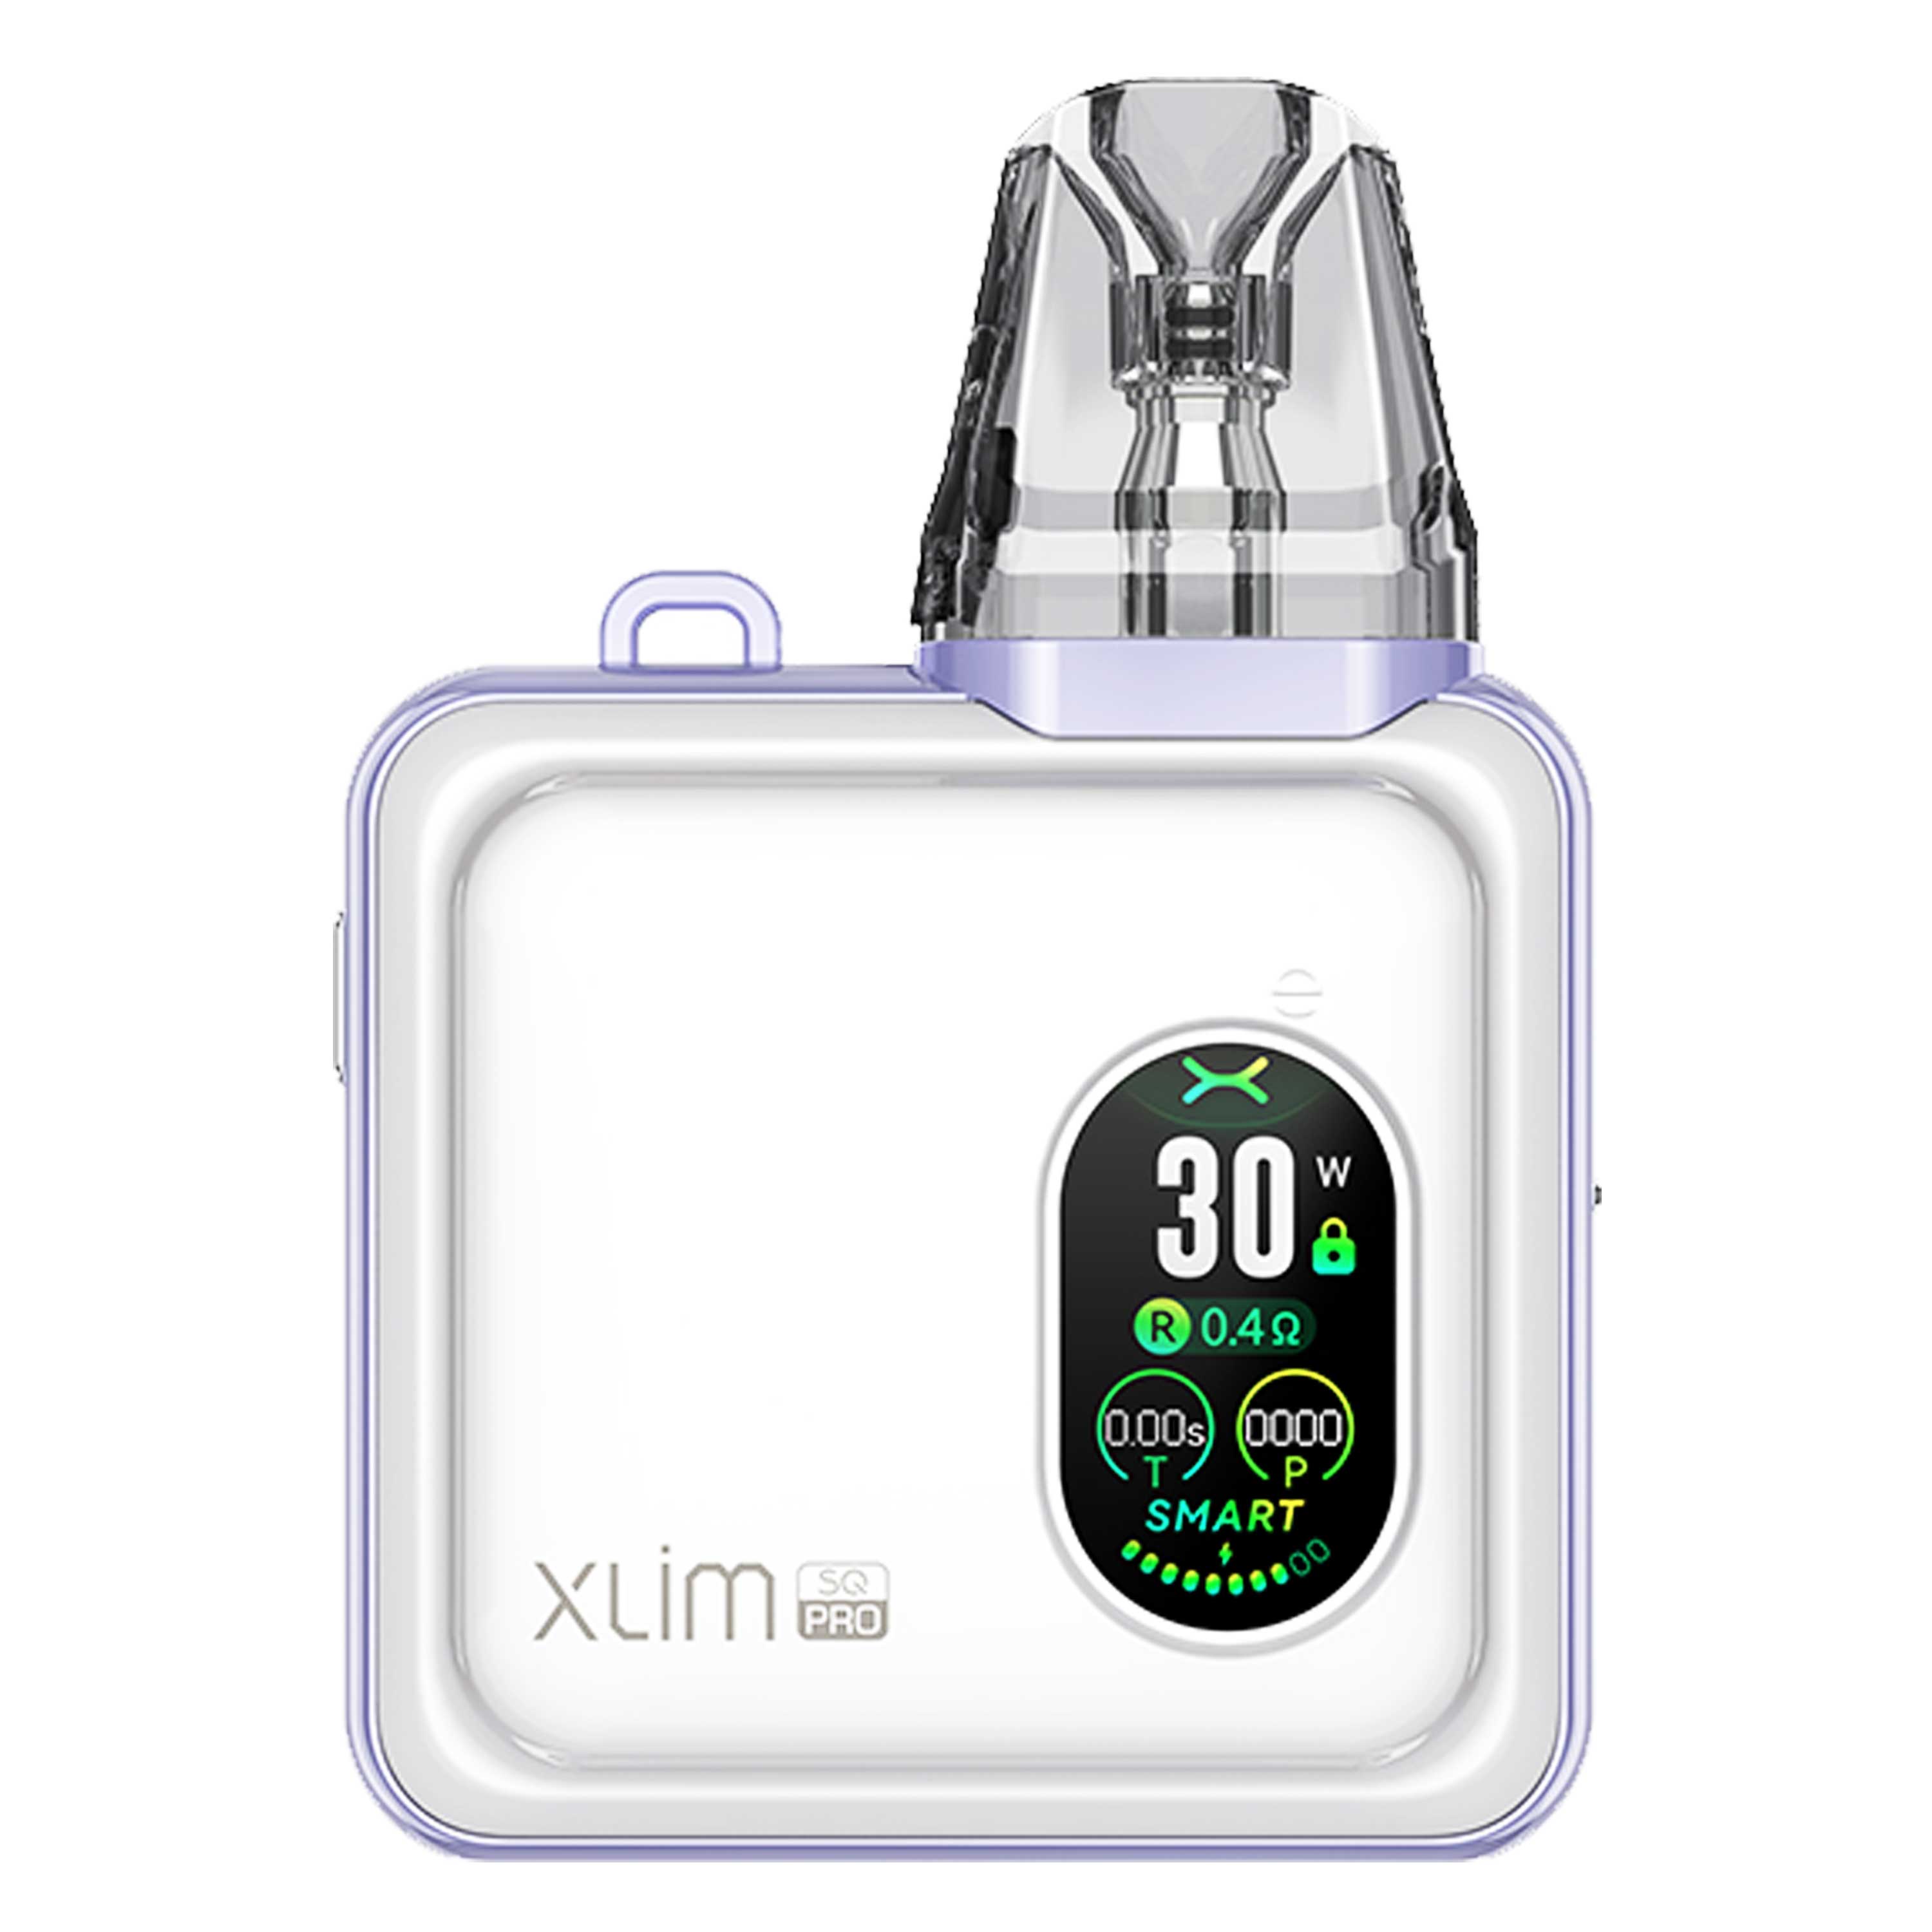 OXVA - Xlim SQ Pro Kit (2 ml) 1200 mAh - E-Zigarette